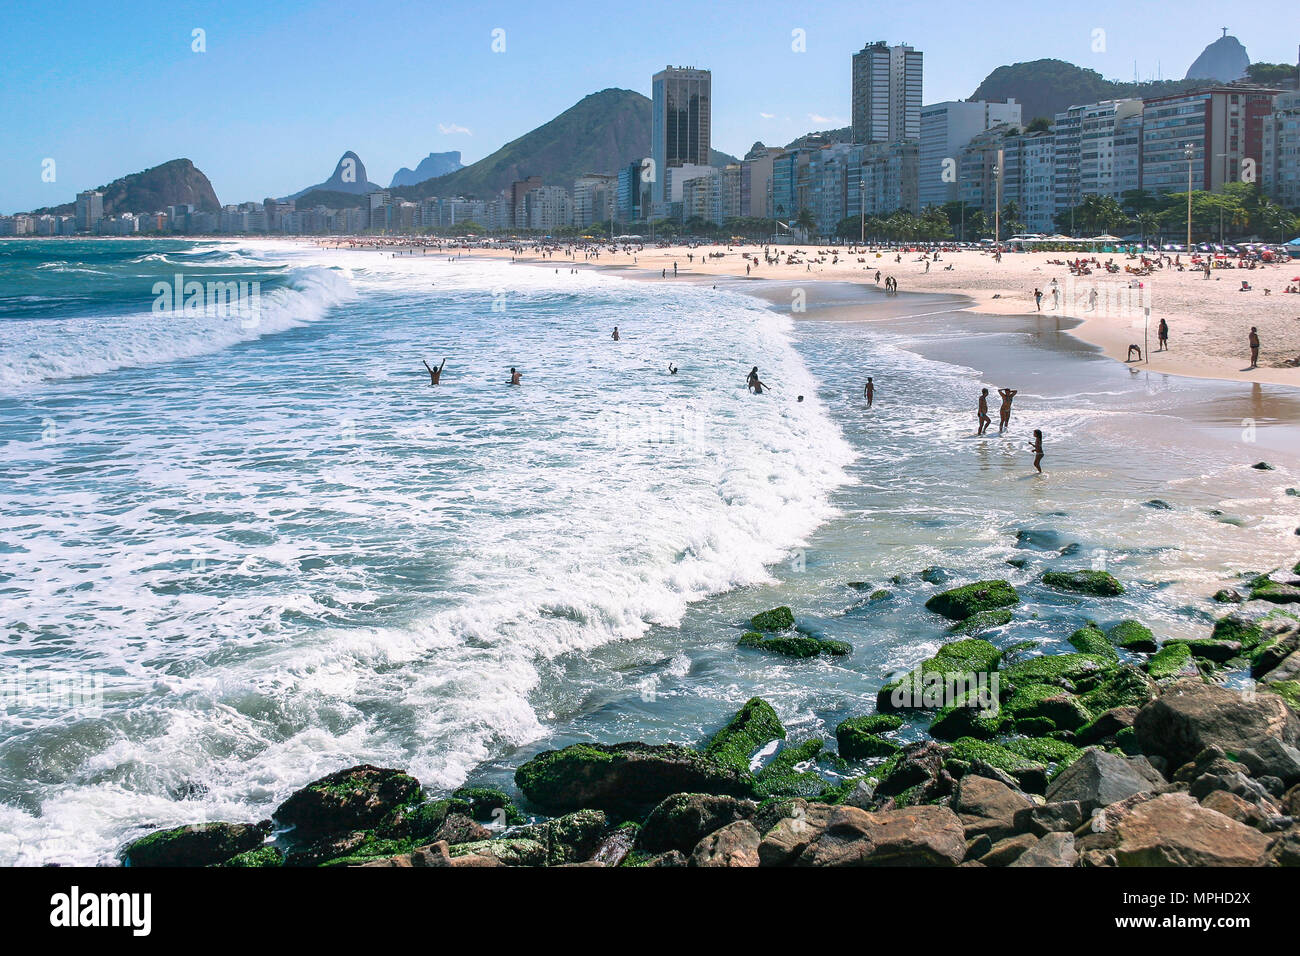 La plage de Copacabana, Rio de Janeiro, le Brésil est l'une des plages les plus célèbres dans le monde Banque D'Images